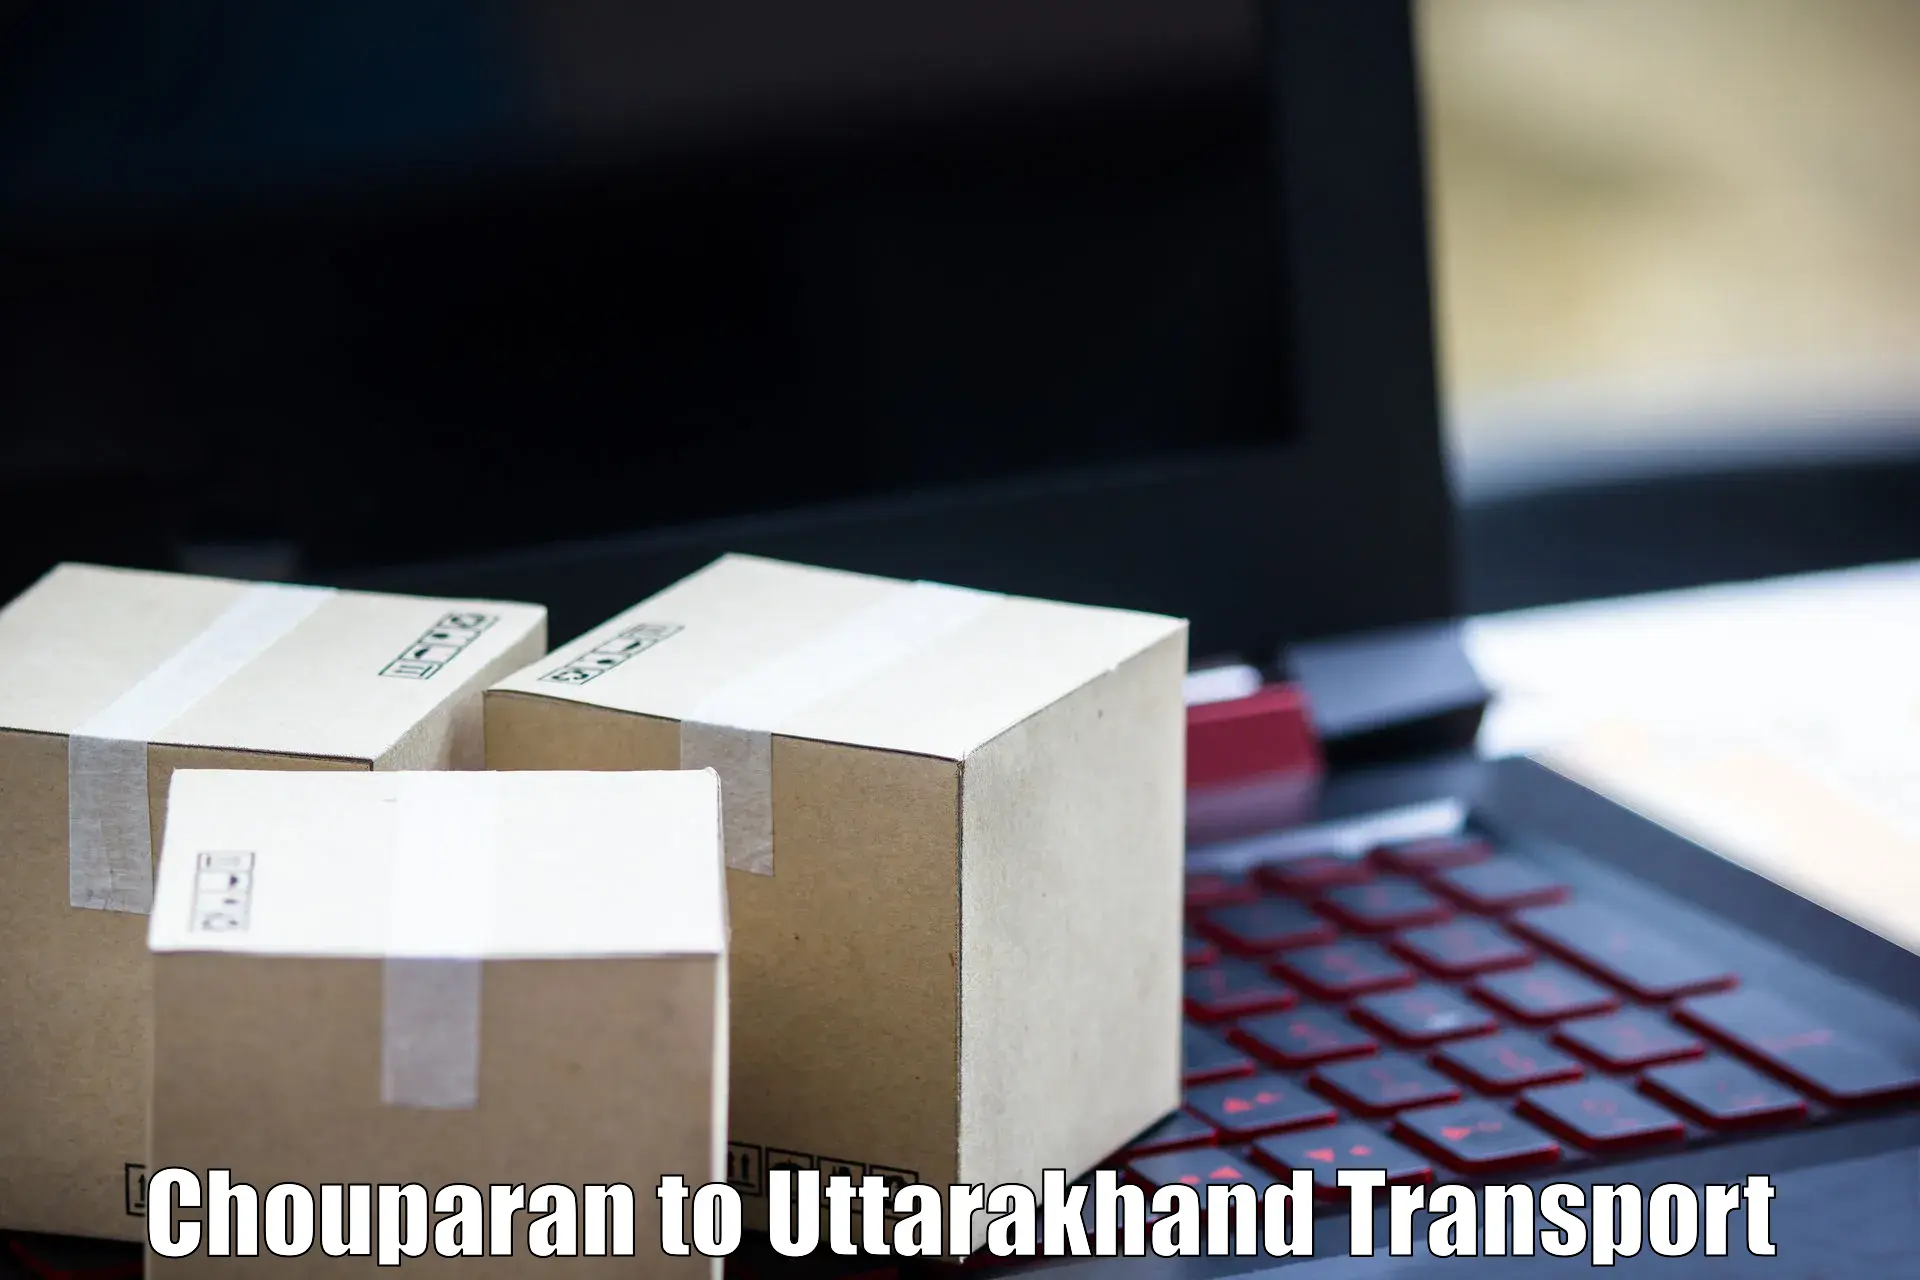 Pick up transport service Chouparan to Dehradun